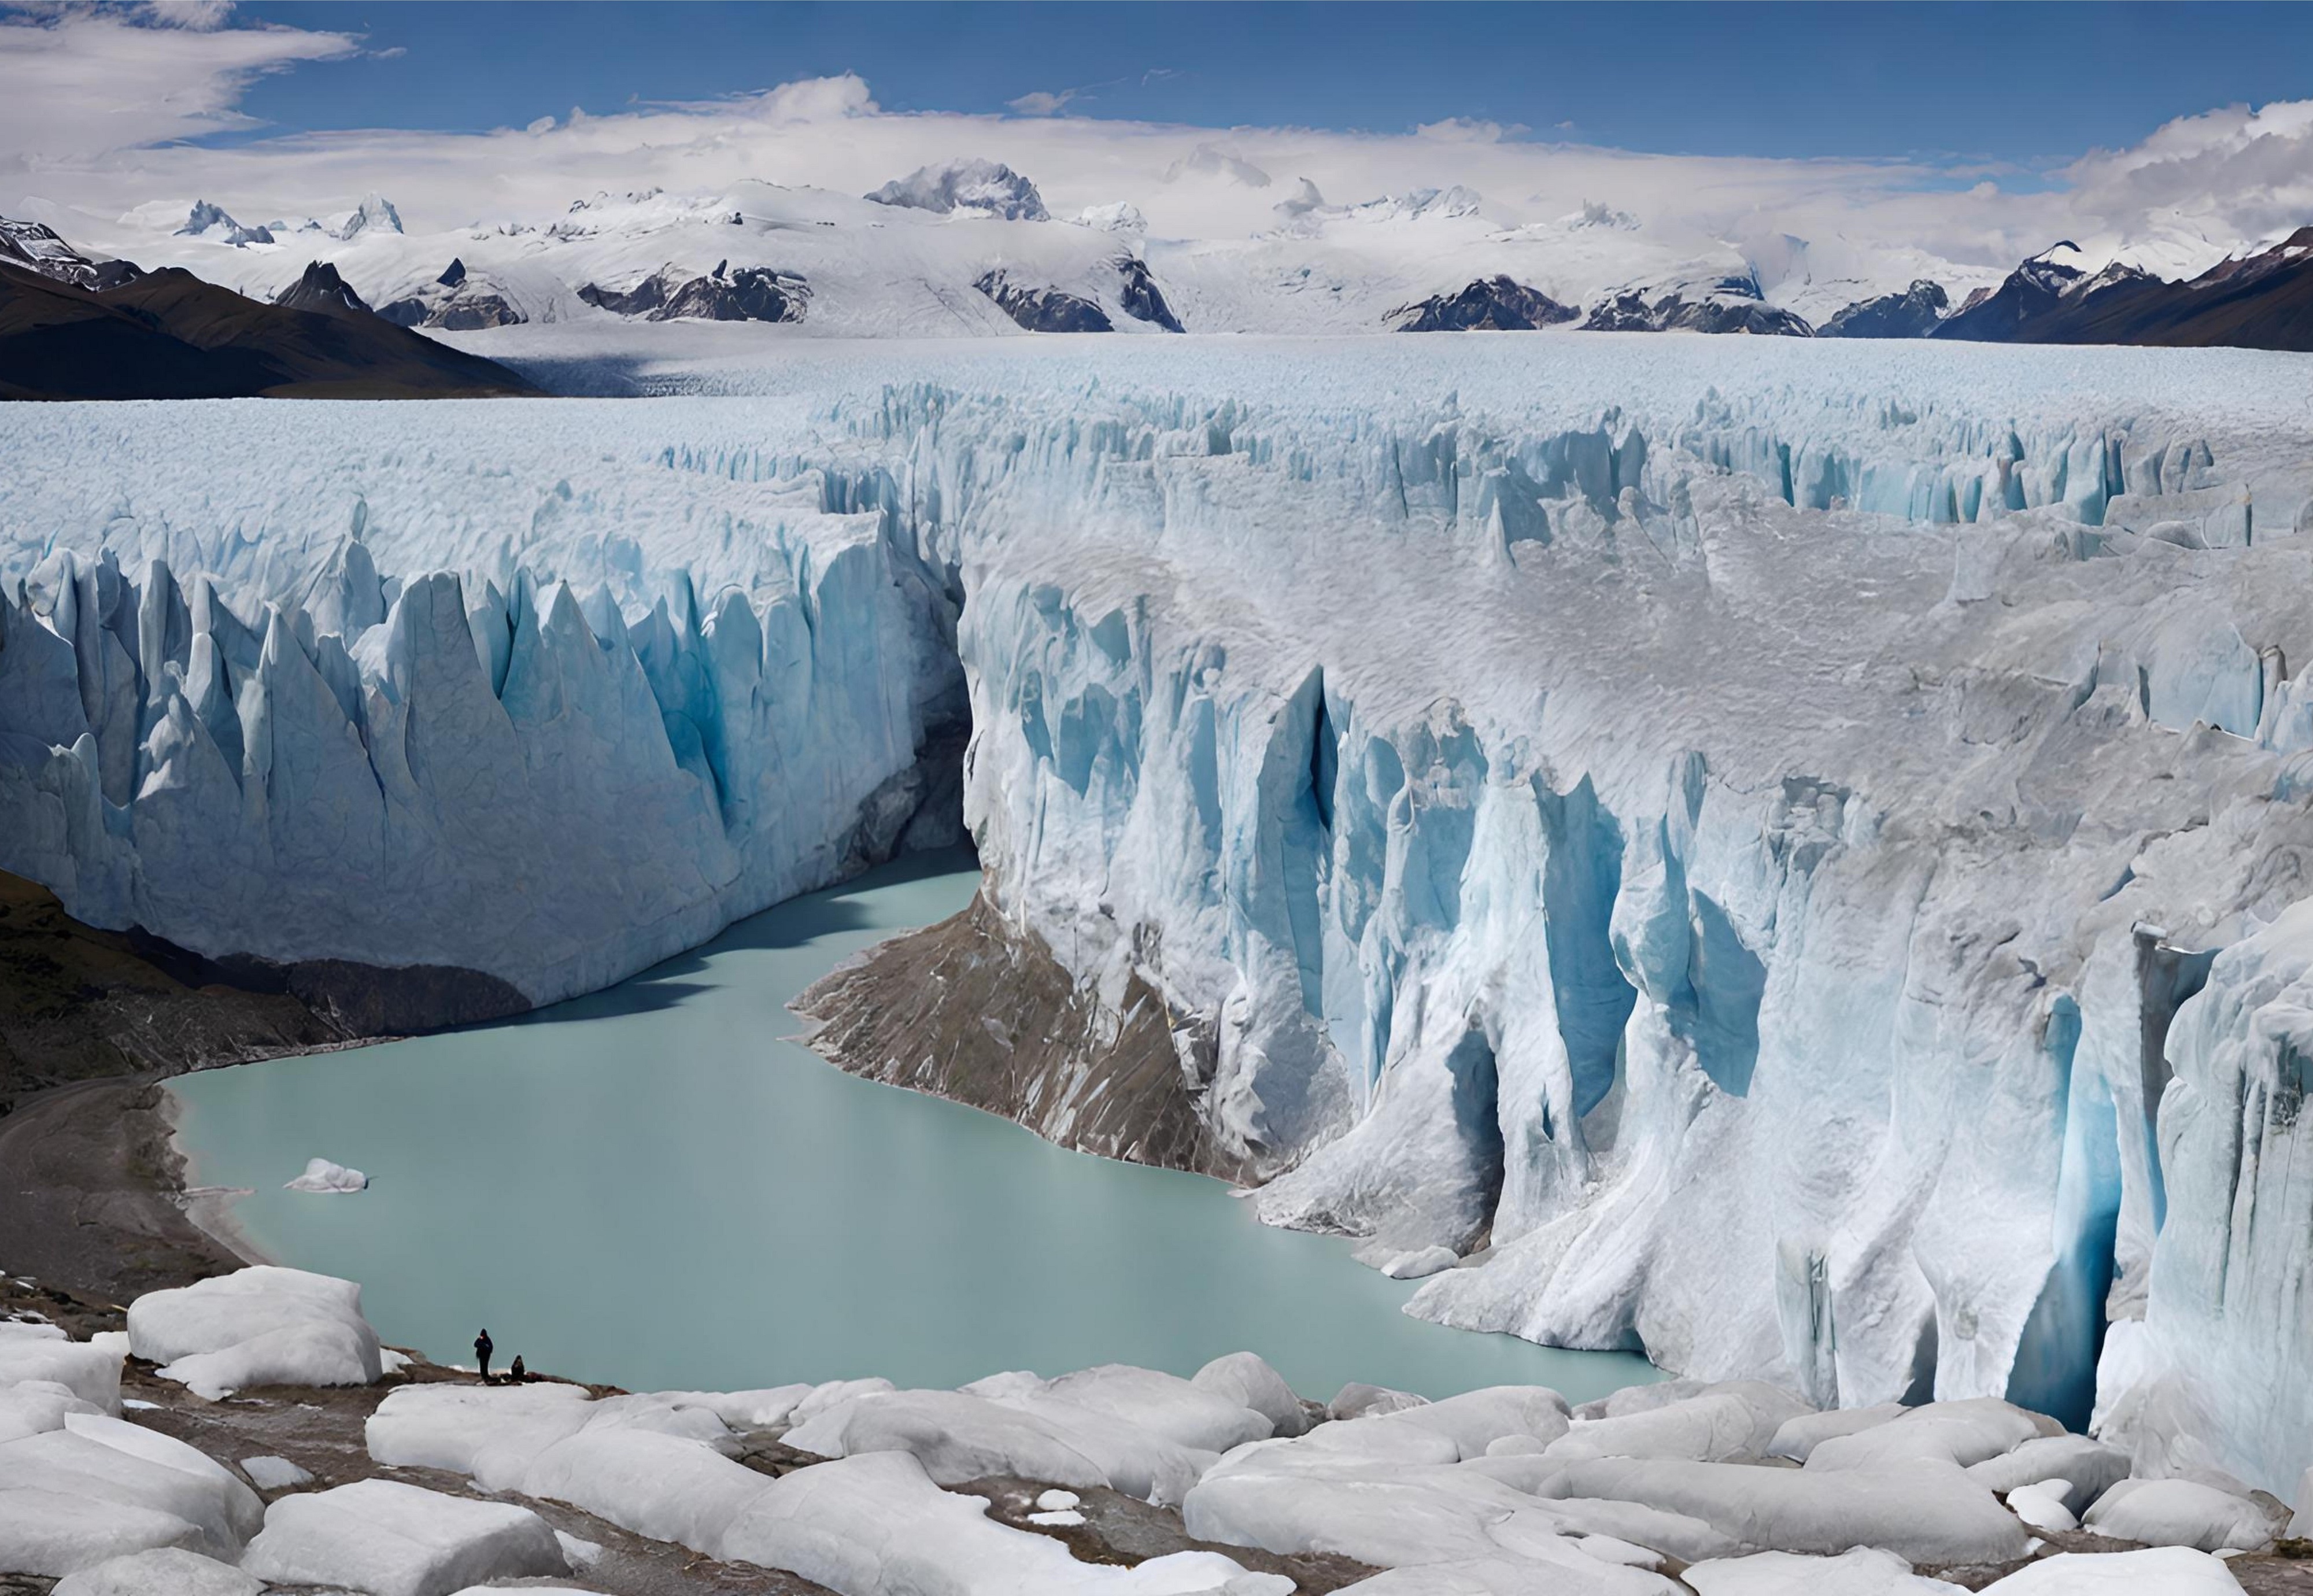 Le réchauffement conduit à davantage de glaciers dans certains zones. © Rao Saad Ishfaq, Adobe Stock